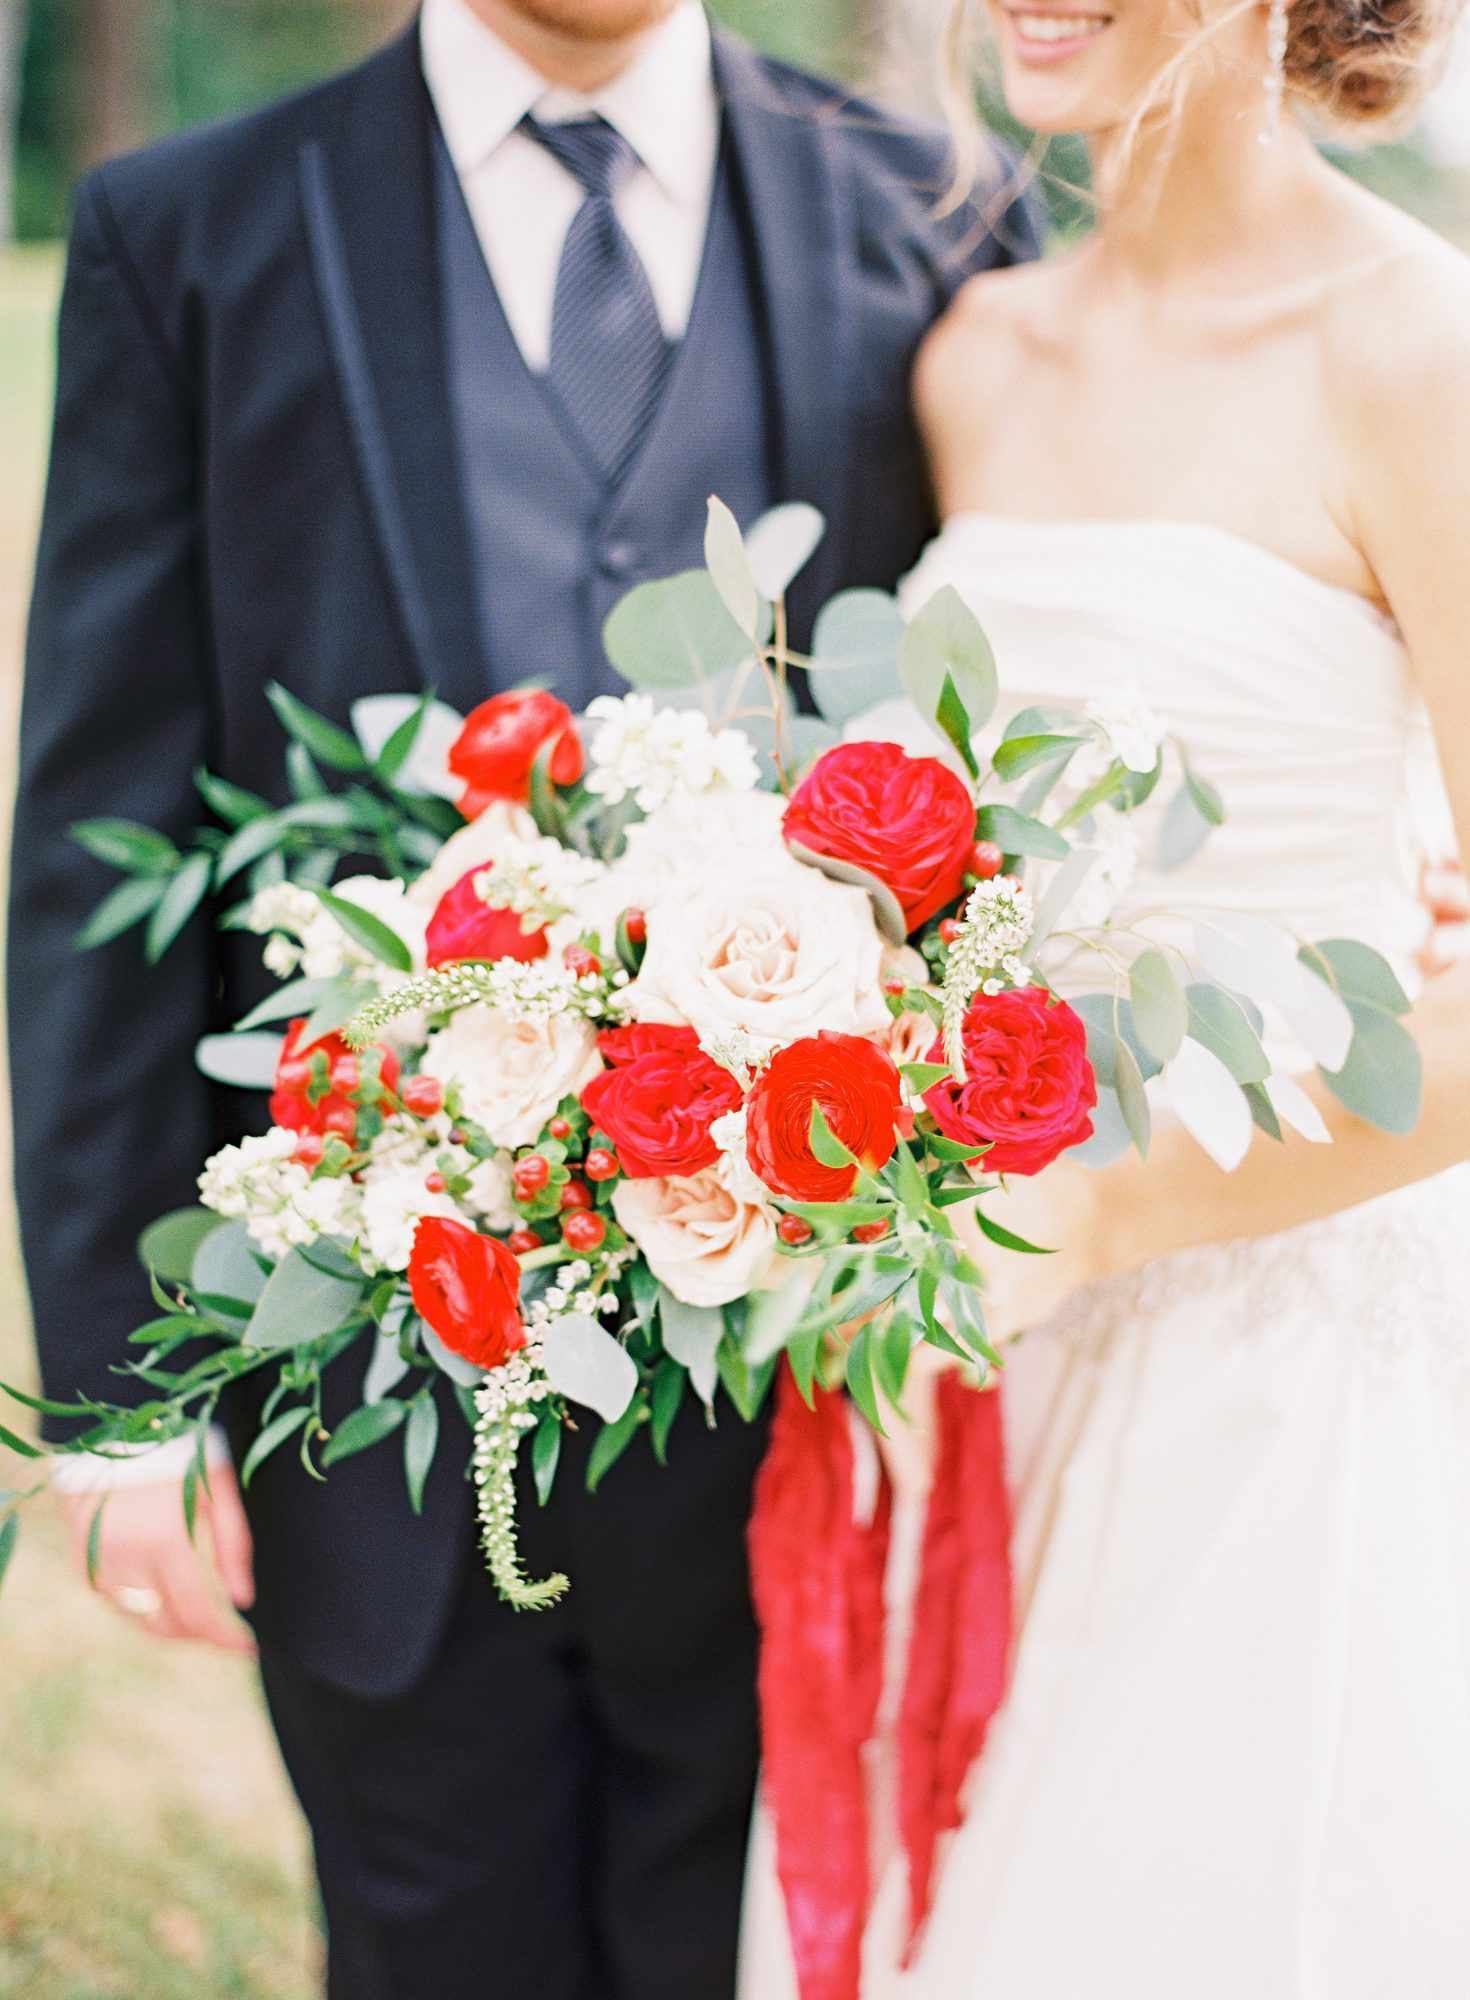 Red Wedding Bouquet